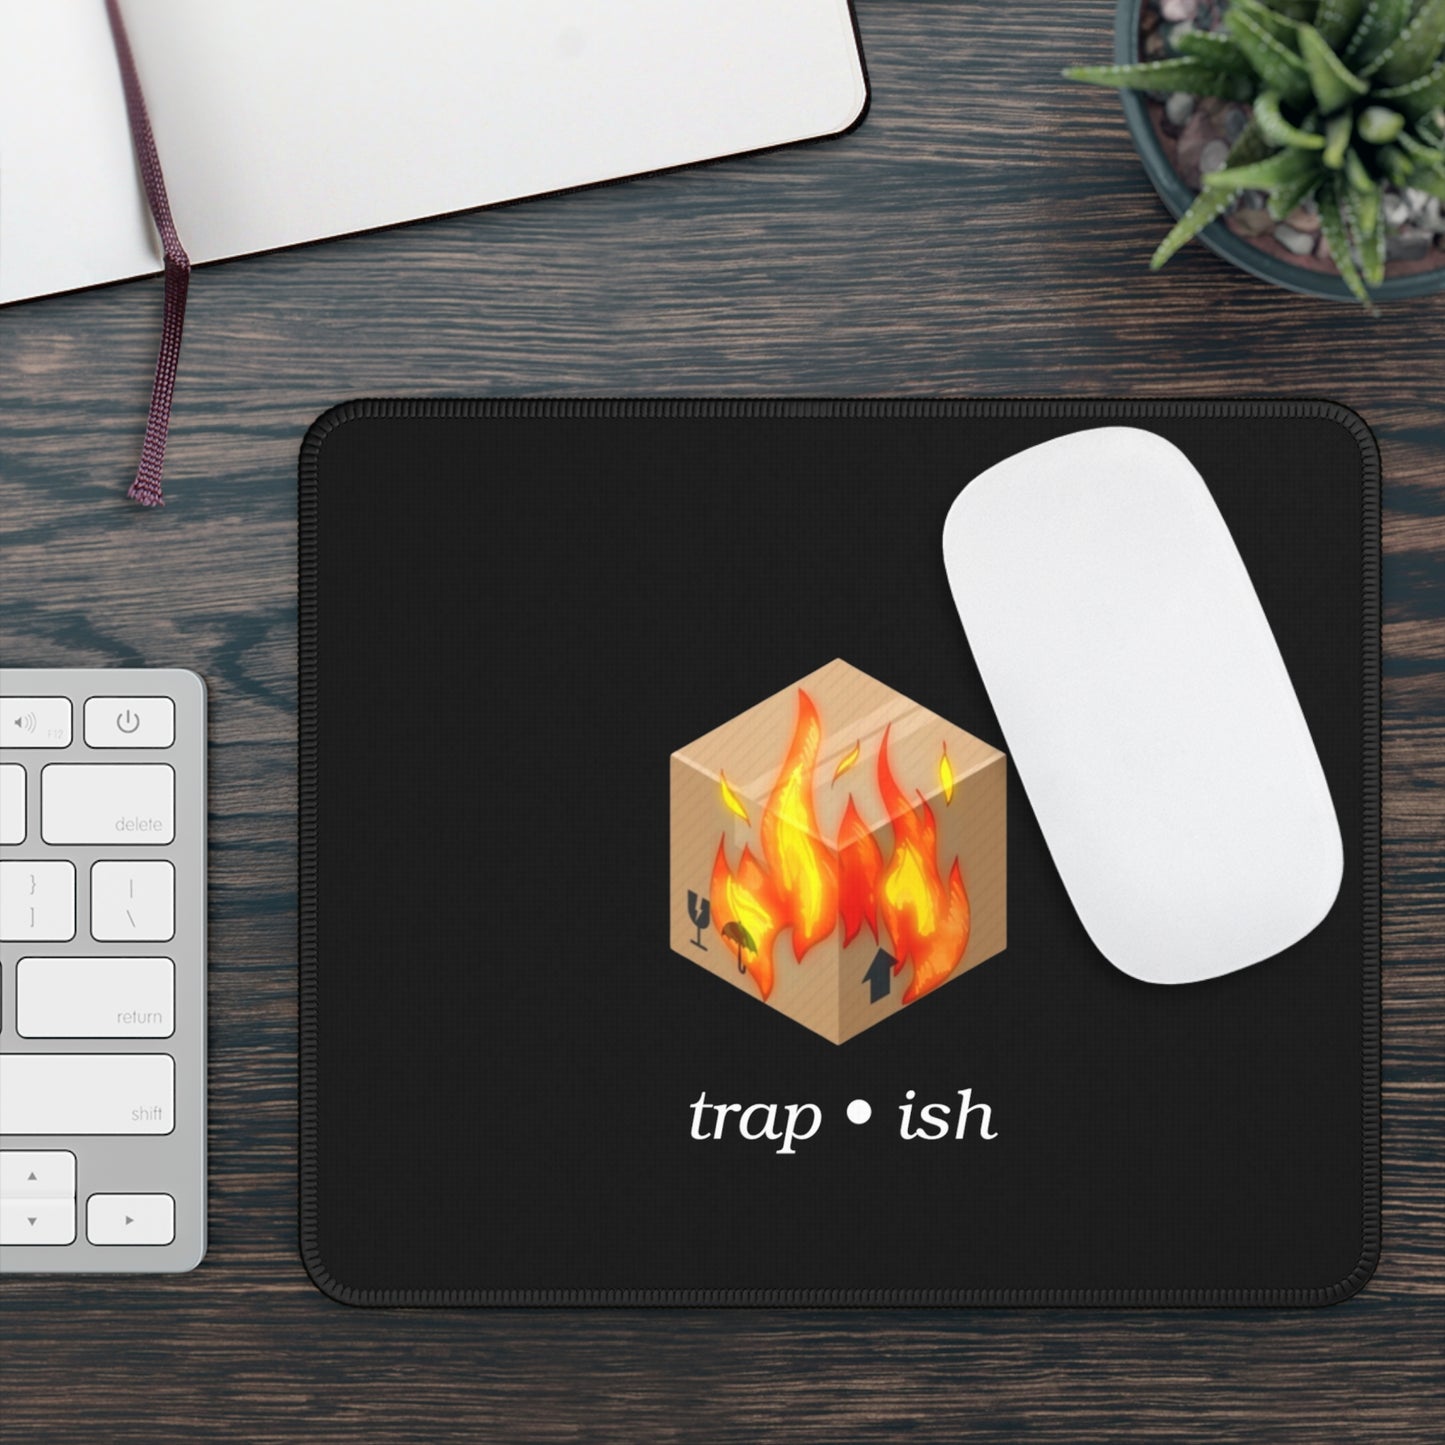 HOTBOX! “Trap-ish” Gaming Mouse Pad